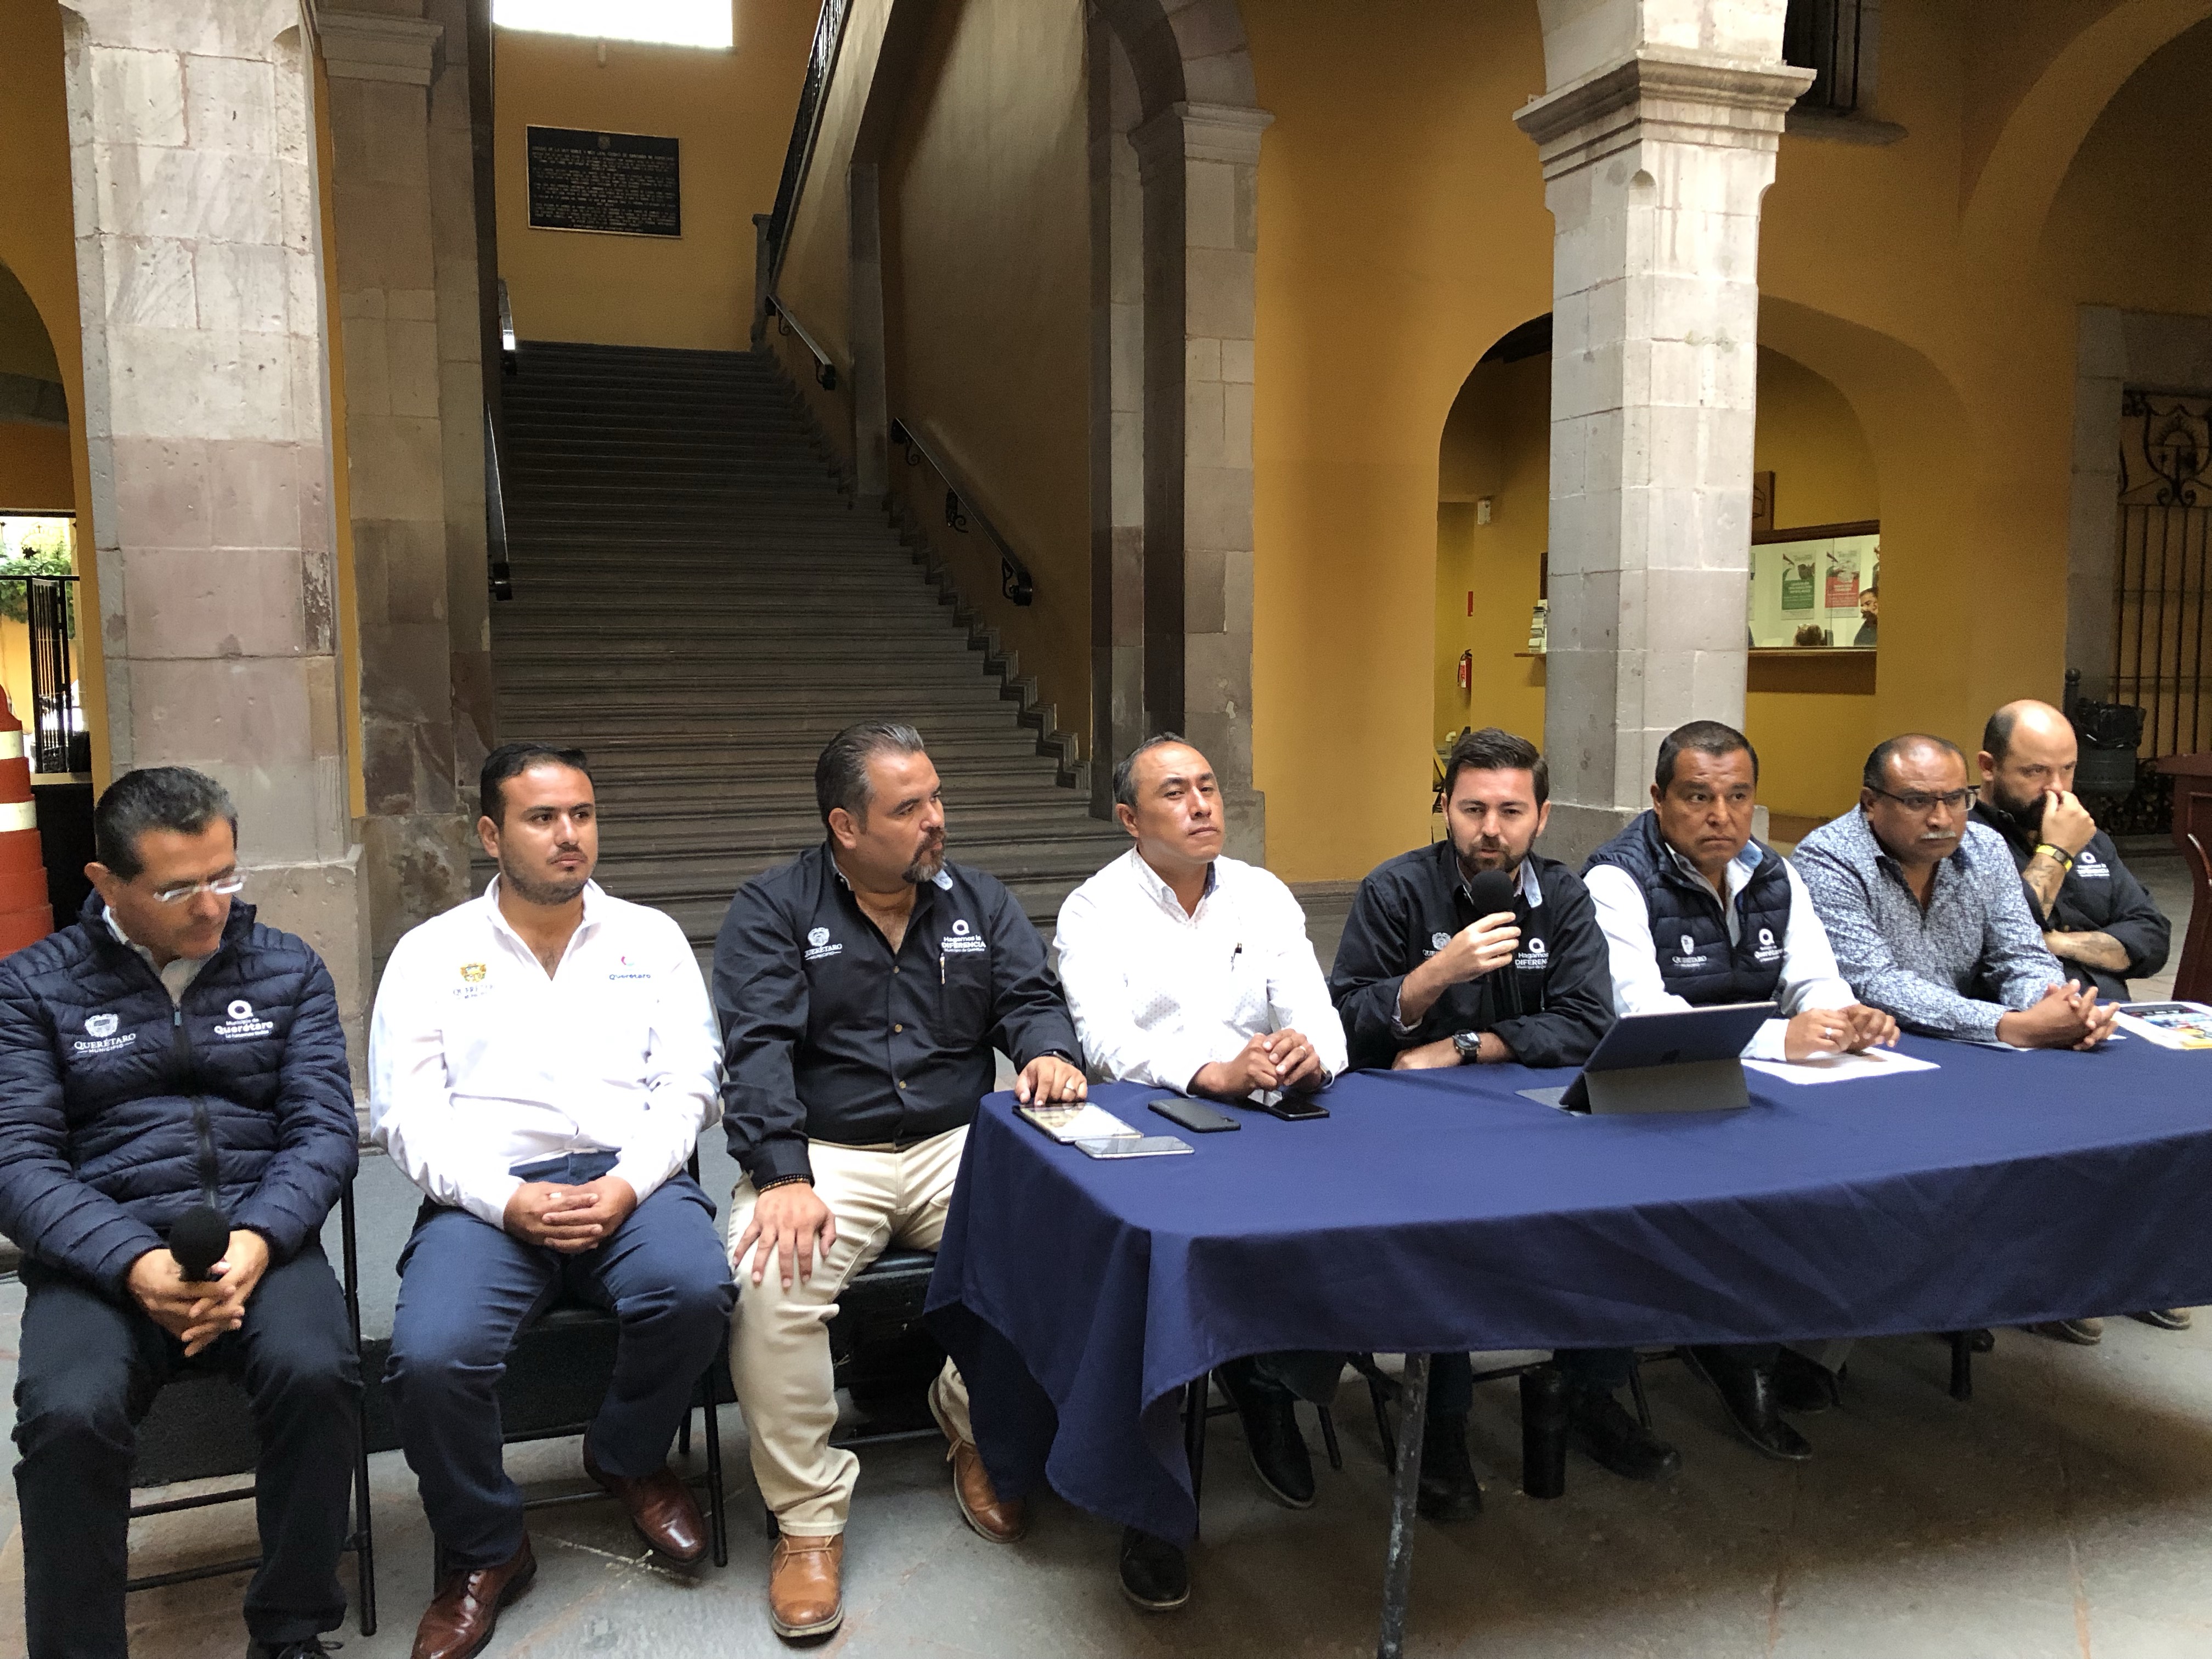  Protección Civil pendiente de las siete delegaciones durante las fiestas patrias: Rodríguez Parada